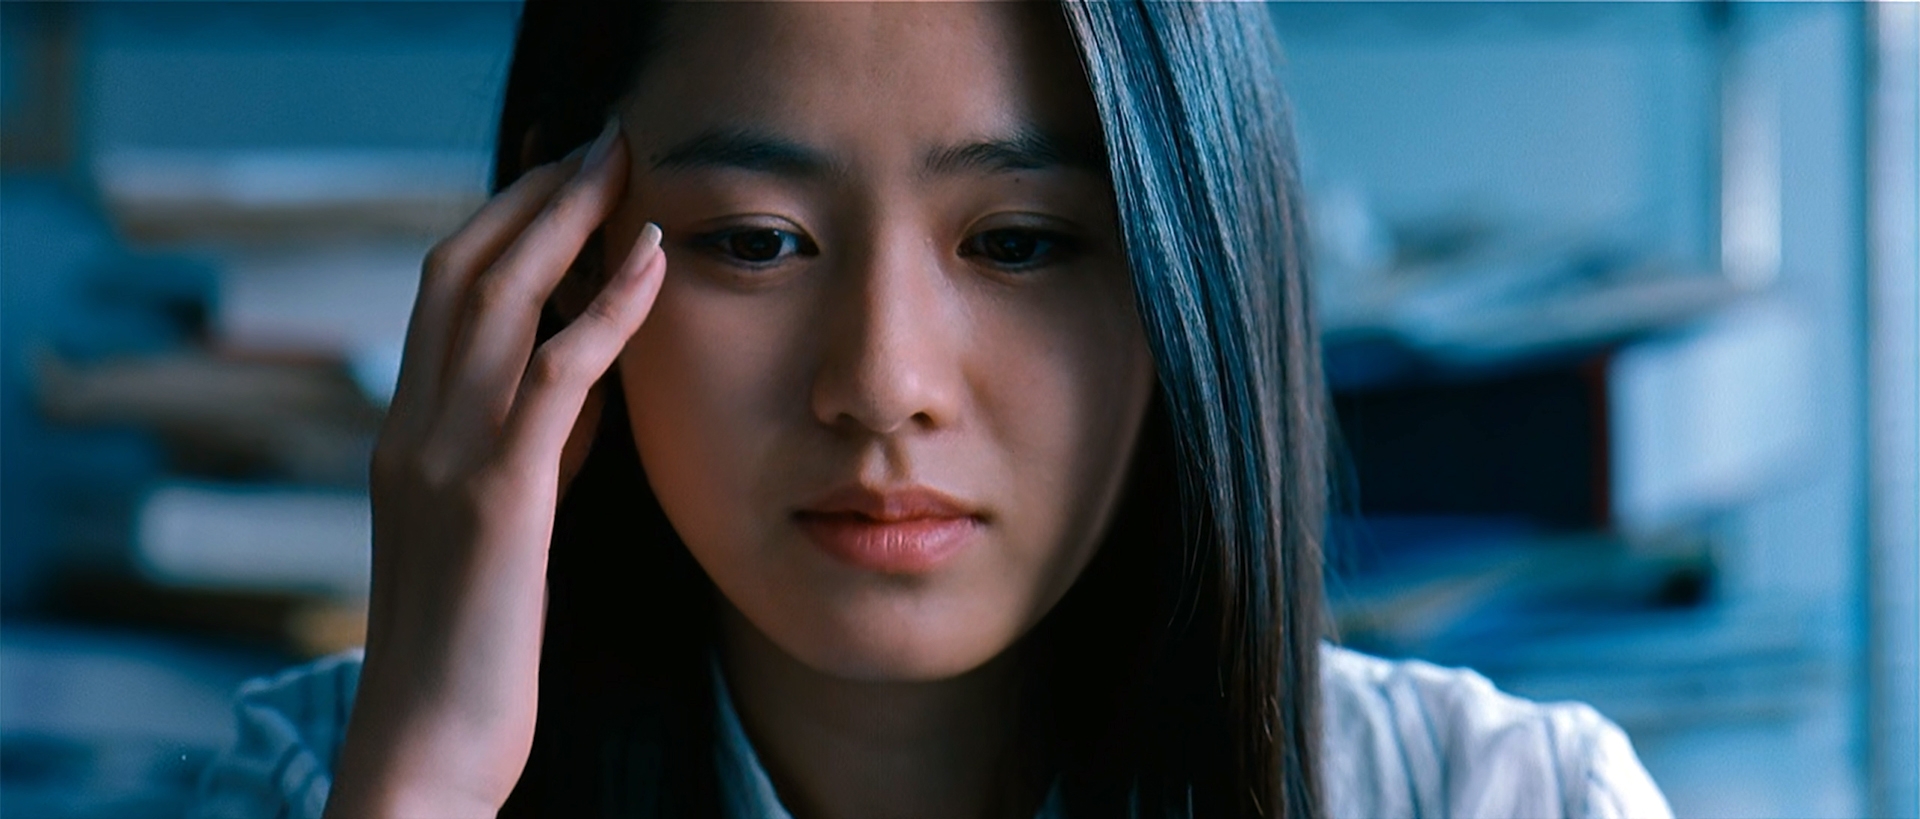 Korean Porn Son Ye Jin - A Moment to Remember (2004) â€“ Korean Movie Review